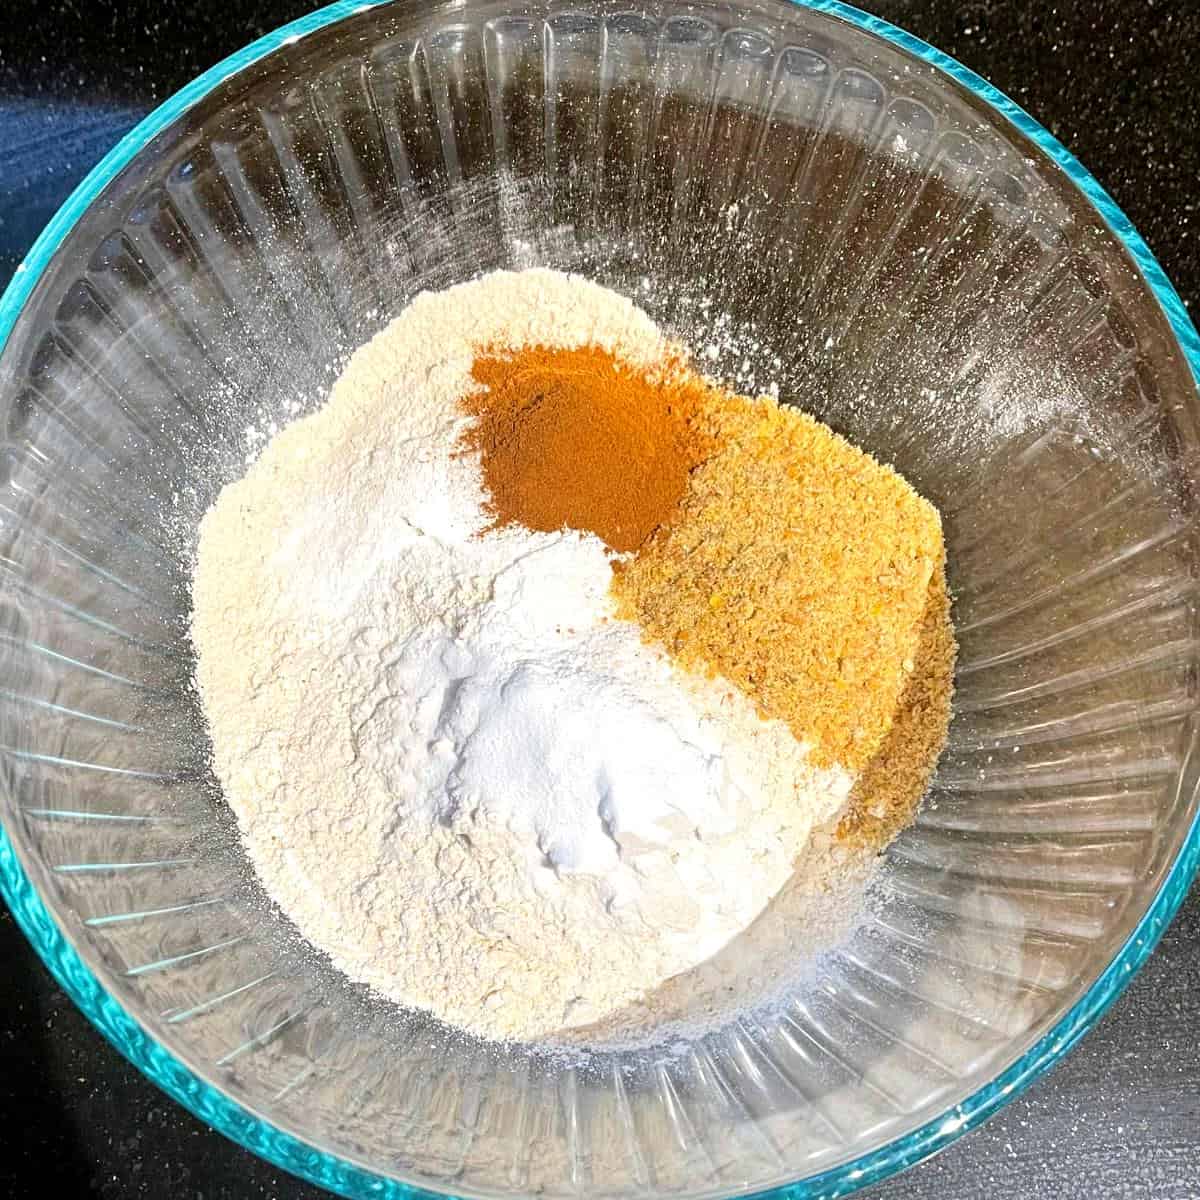 Dry ingredients for vegan sweet potato pancakes in bowl.